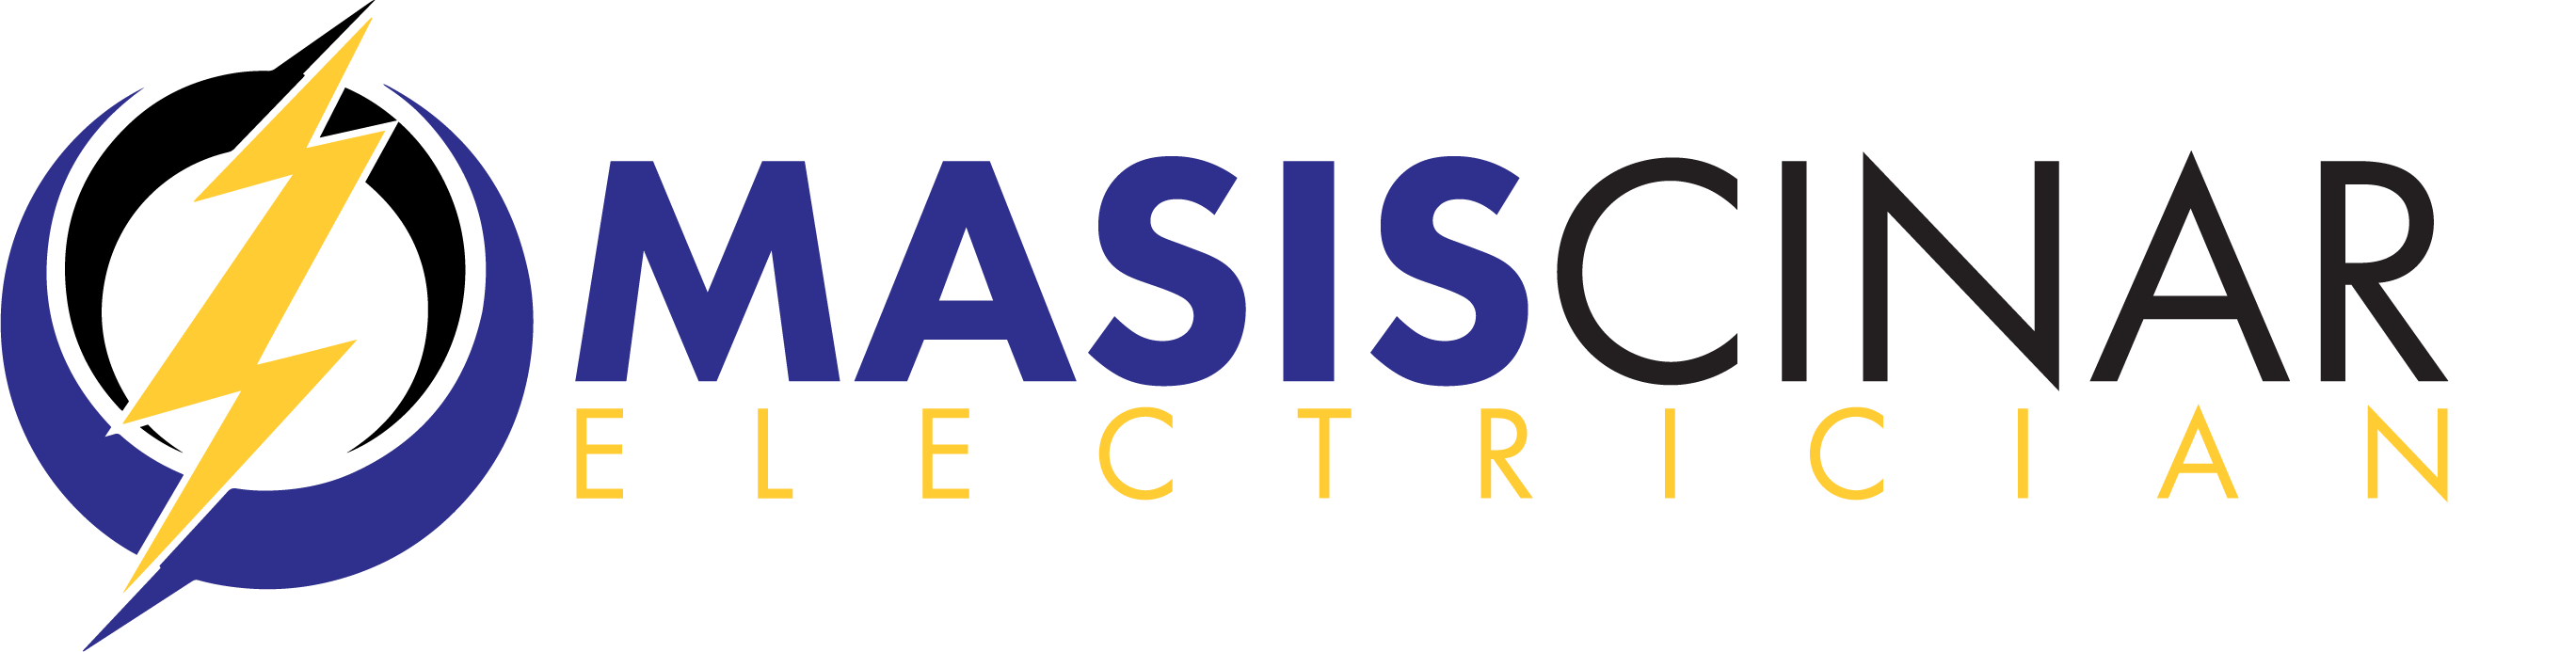 Masis Cinar Electrician Logo